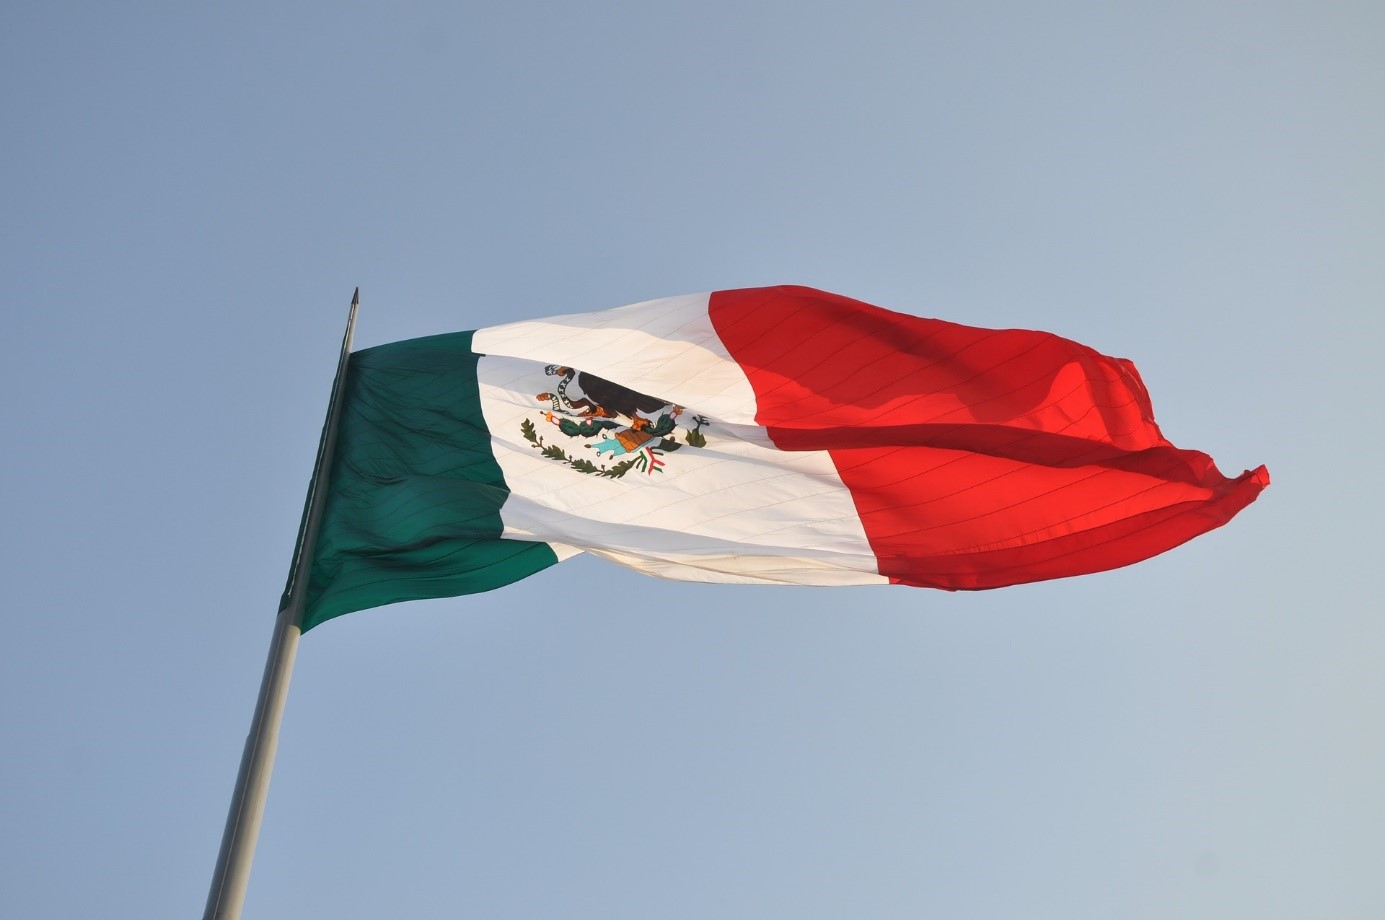 HANetf, Europas första ”white label” UCITS ETF-emittent med full service, stärker närvaron i Mexiko och listar mer än ett dussin nya fonder. Företaget har listat 16 ETFer på Bolsa Mexicana de Valores (BMV) den 15 mars 2022.